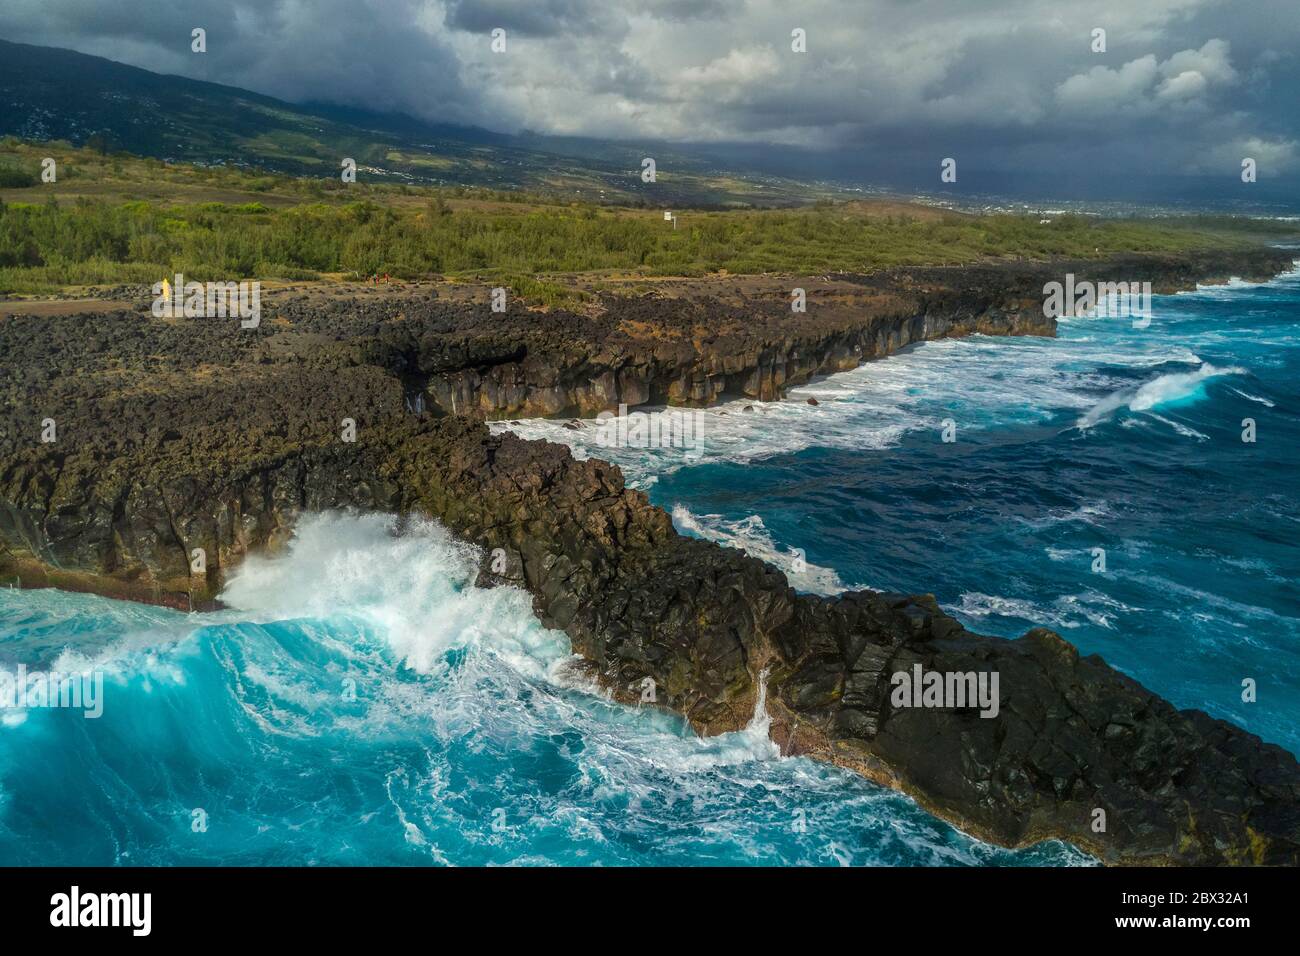 Francia, isola di Reunion (dipartimento francese d'oltremare), l'Etang Salé les Bains, la costa tra le Gouffre e l'Etang du Gol (Stagno di Gol), rocce basaltiche nere di origine vulcanica tormentate dall'oceano (vista aerea) Foto Stock